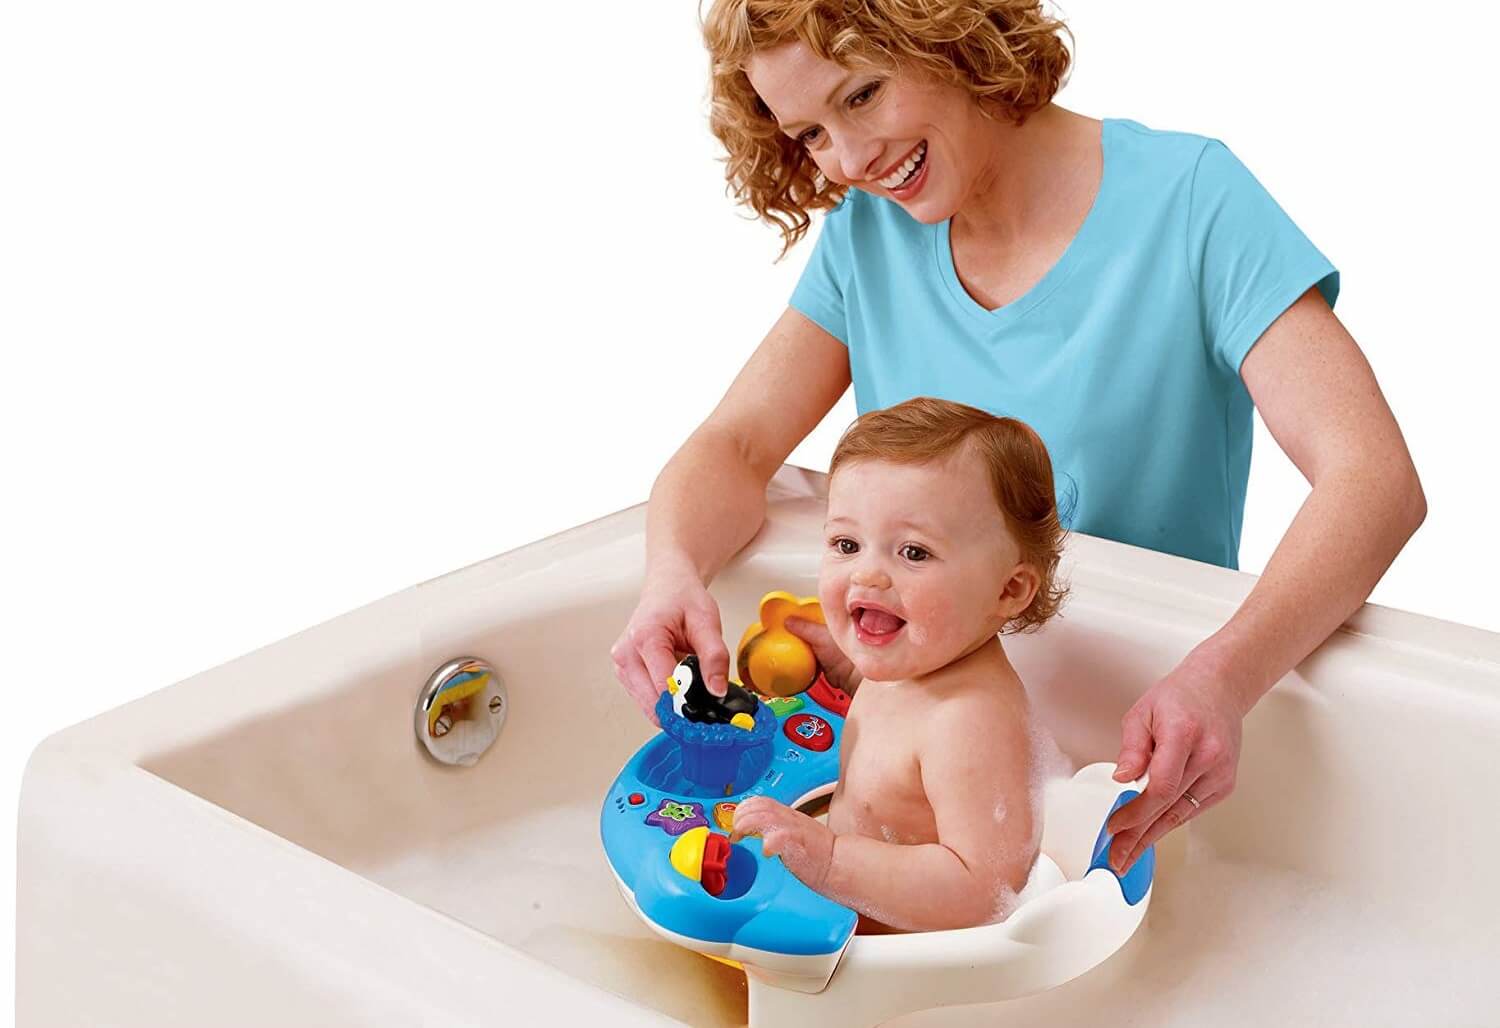 Pekkadillo Obediente Dando Los mejores asientos y hamacas de bañera para bebés • CompraMejor USA